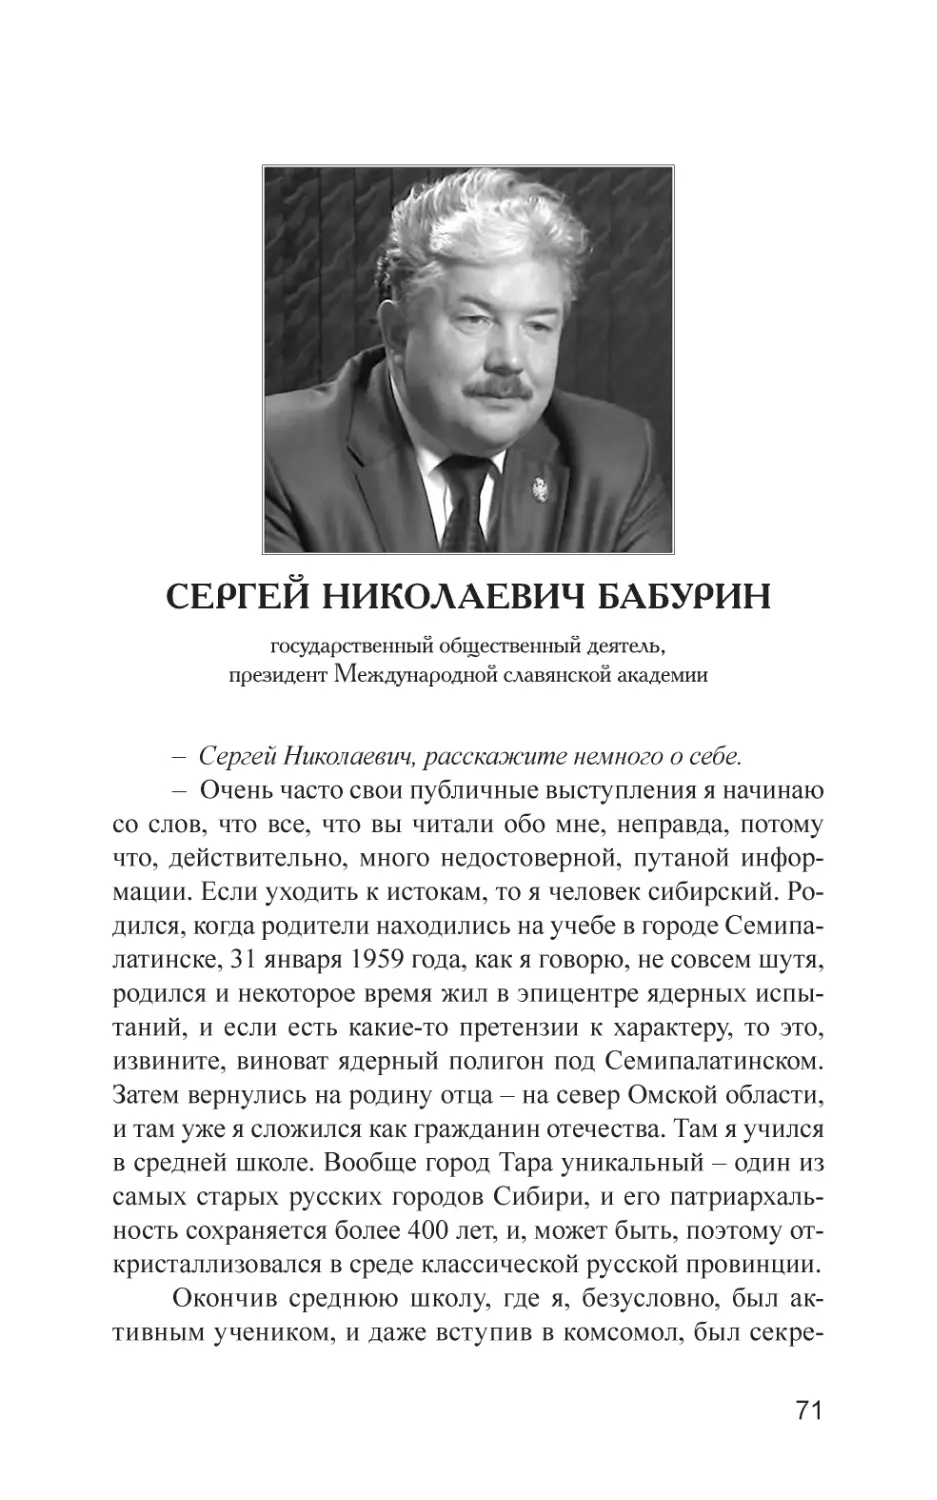 Сергей Николаевич Бабурин